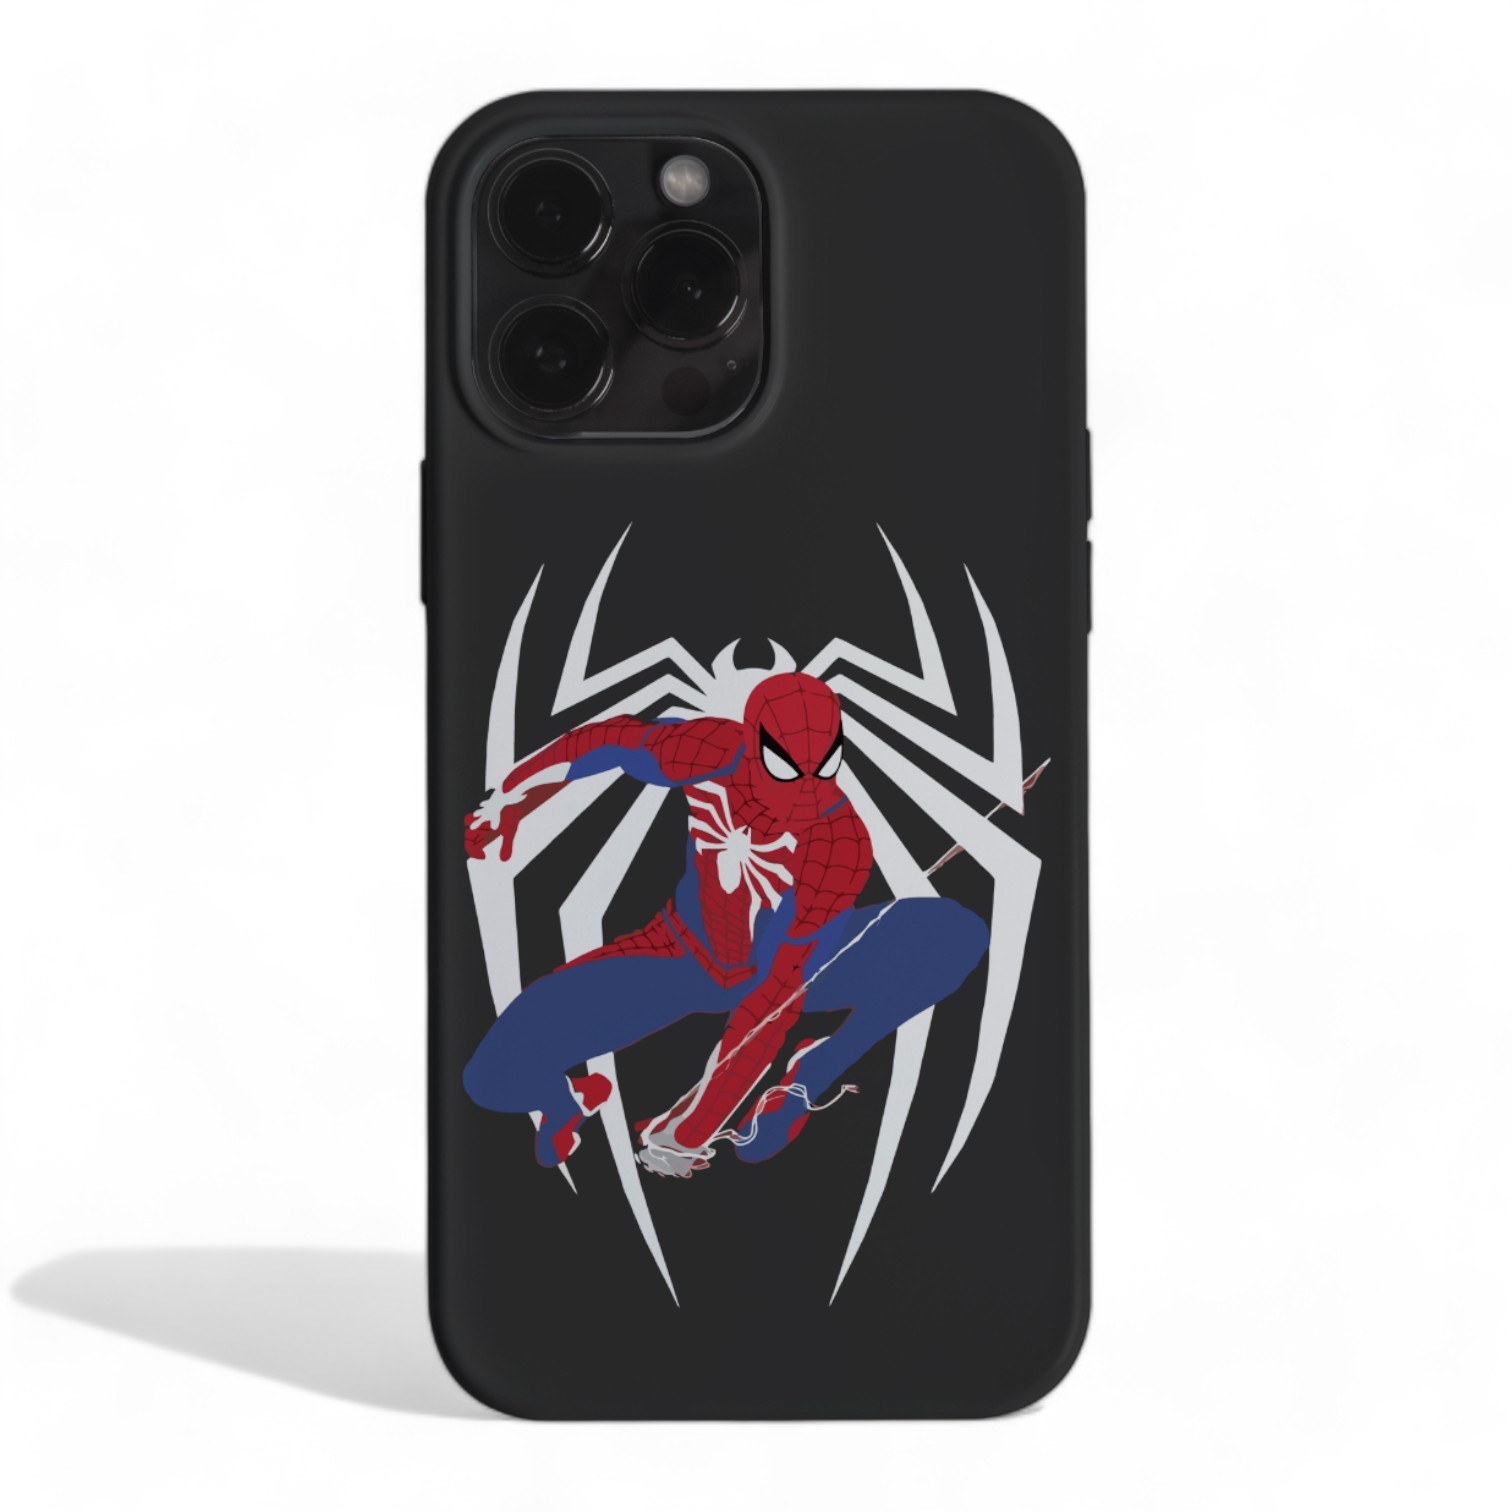 SpiderMan Case